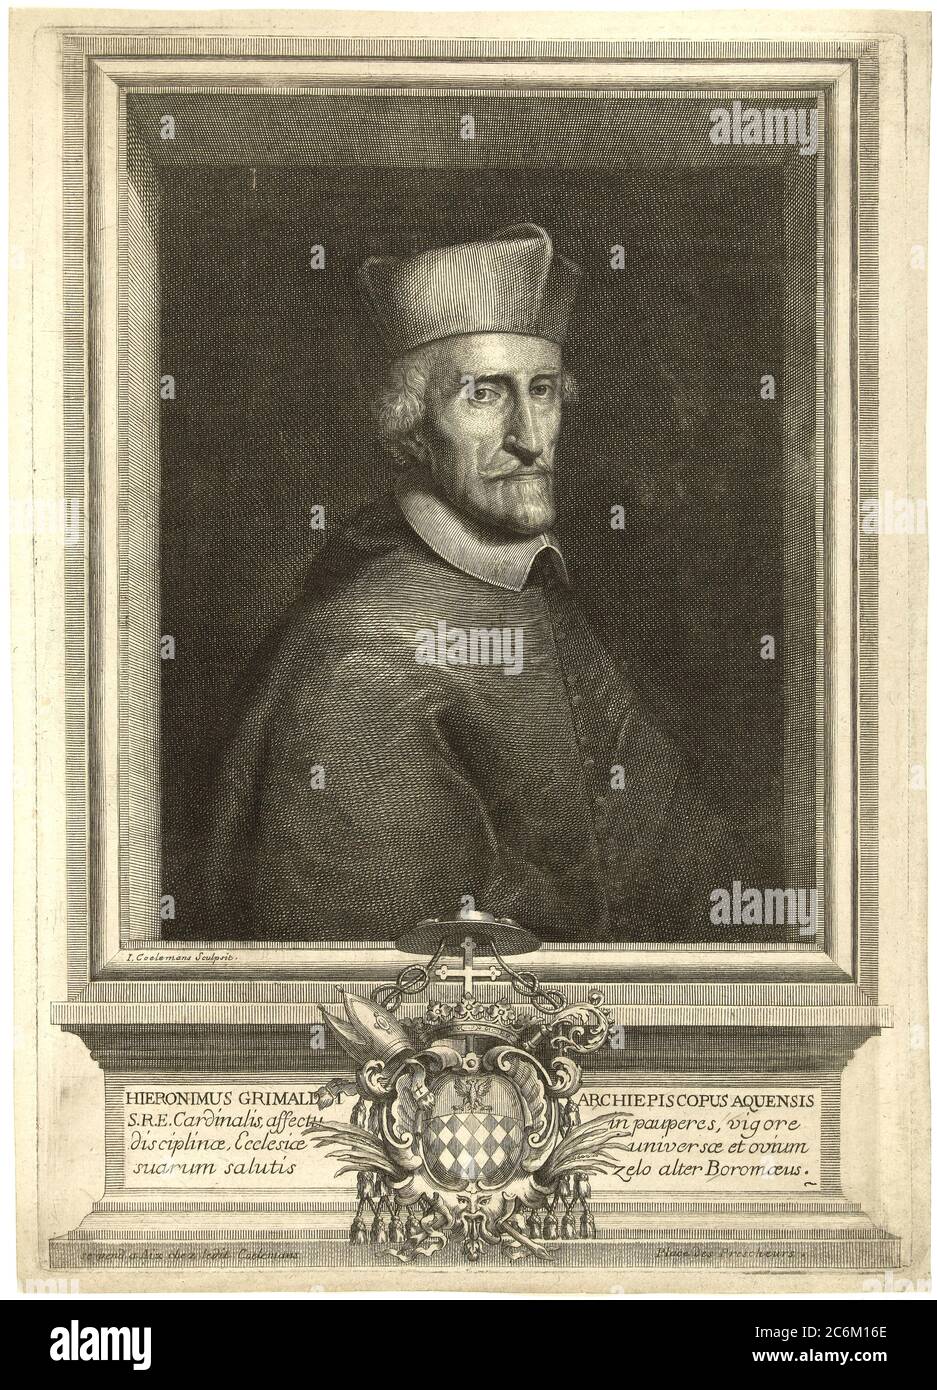 1680 c, ROMA, ITALY : The italian Catholic Arcivescovo  Cardinale GIROLAMO GRIMALDI CAVALLERONI ( 1597 - 1685 ), Cardinale nomined  by Papa Urbano VIII in 1643 . Portrait engraved byI. Coelemans . - Grimaldi-Cavalleroni - RELIGIONE CATTOLICA - ARCIVESCOVO - CARDINALE - CATHOLIC RELIGION - CLERICALI - CLERICALE - ALTO PRELATI - VATICANO - VATICAN - ITALIA - incisione - engraving - illustrazione - HISTORY - FOTO STORICHE --- Archivio GBB Stock Photo